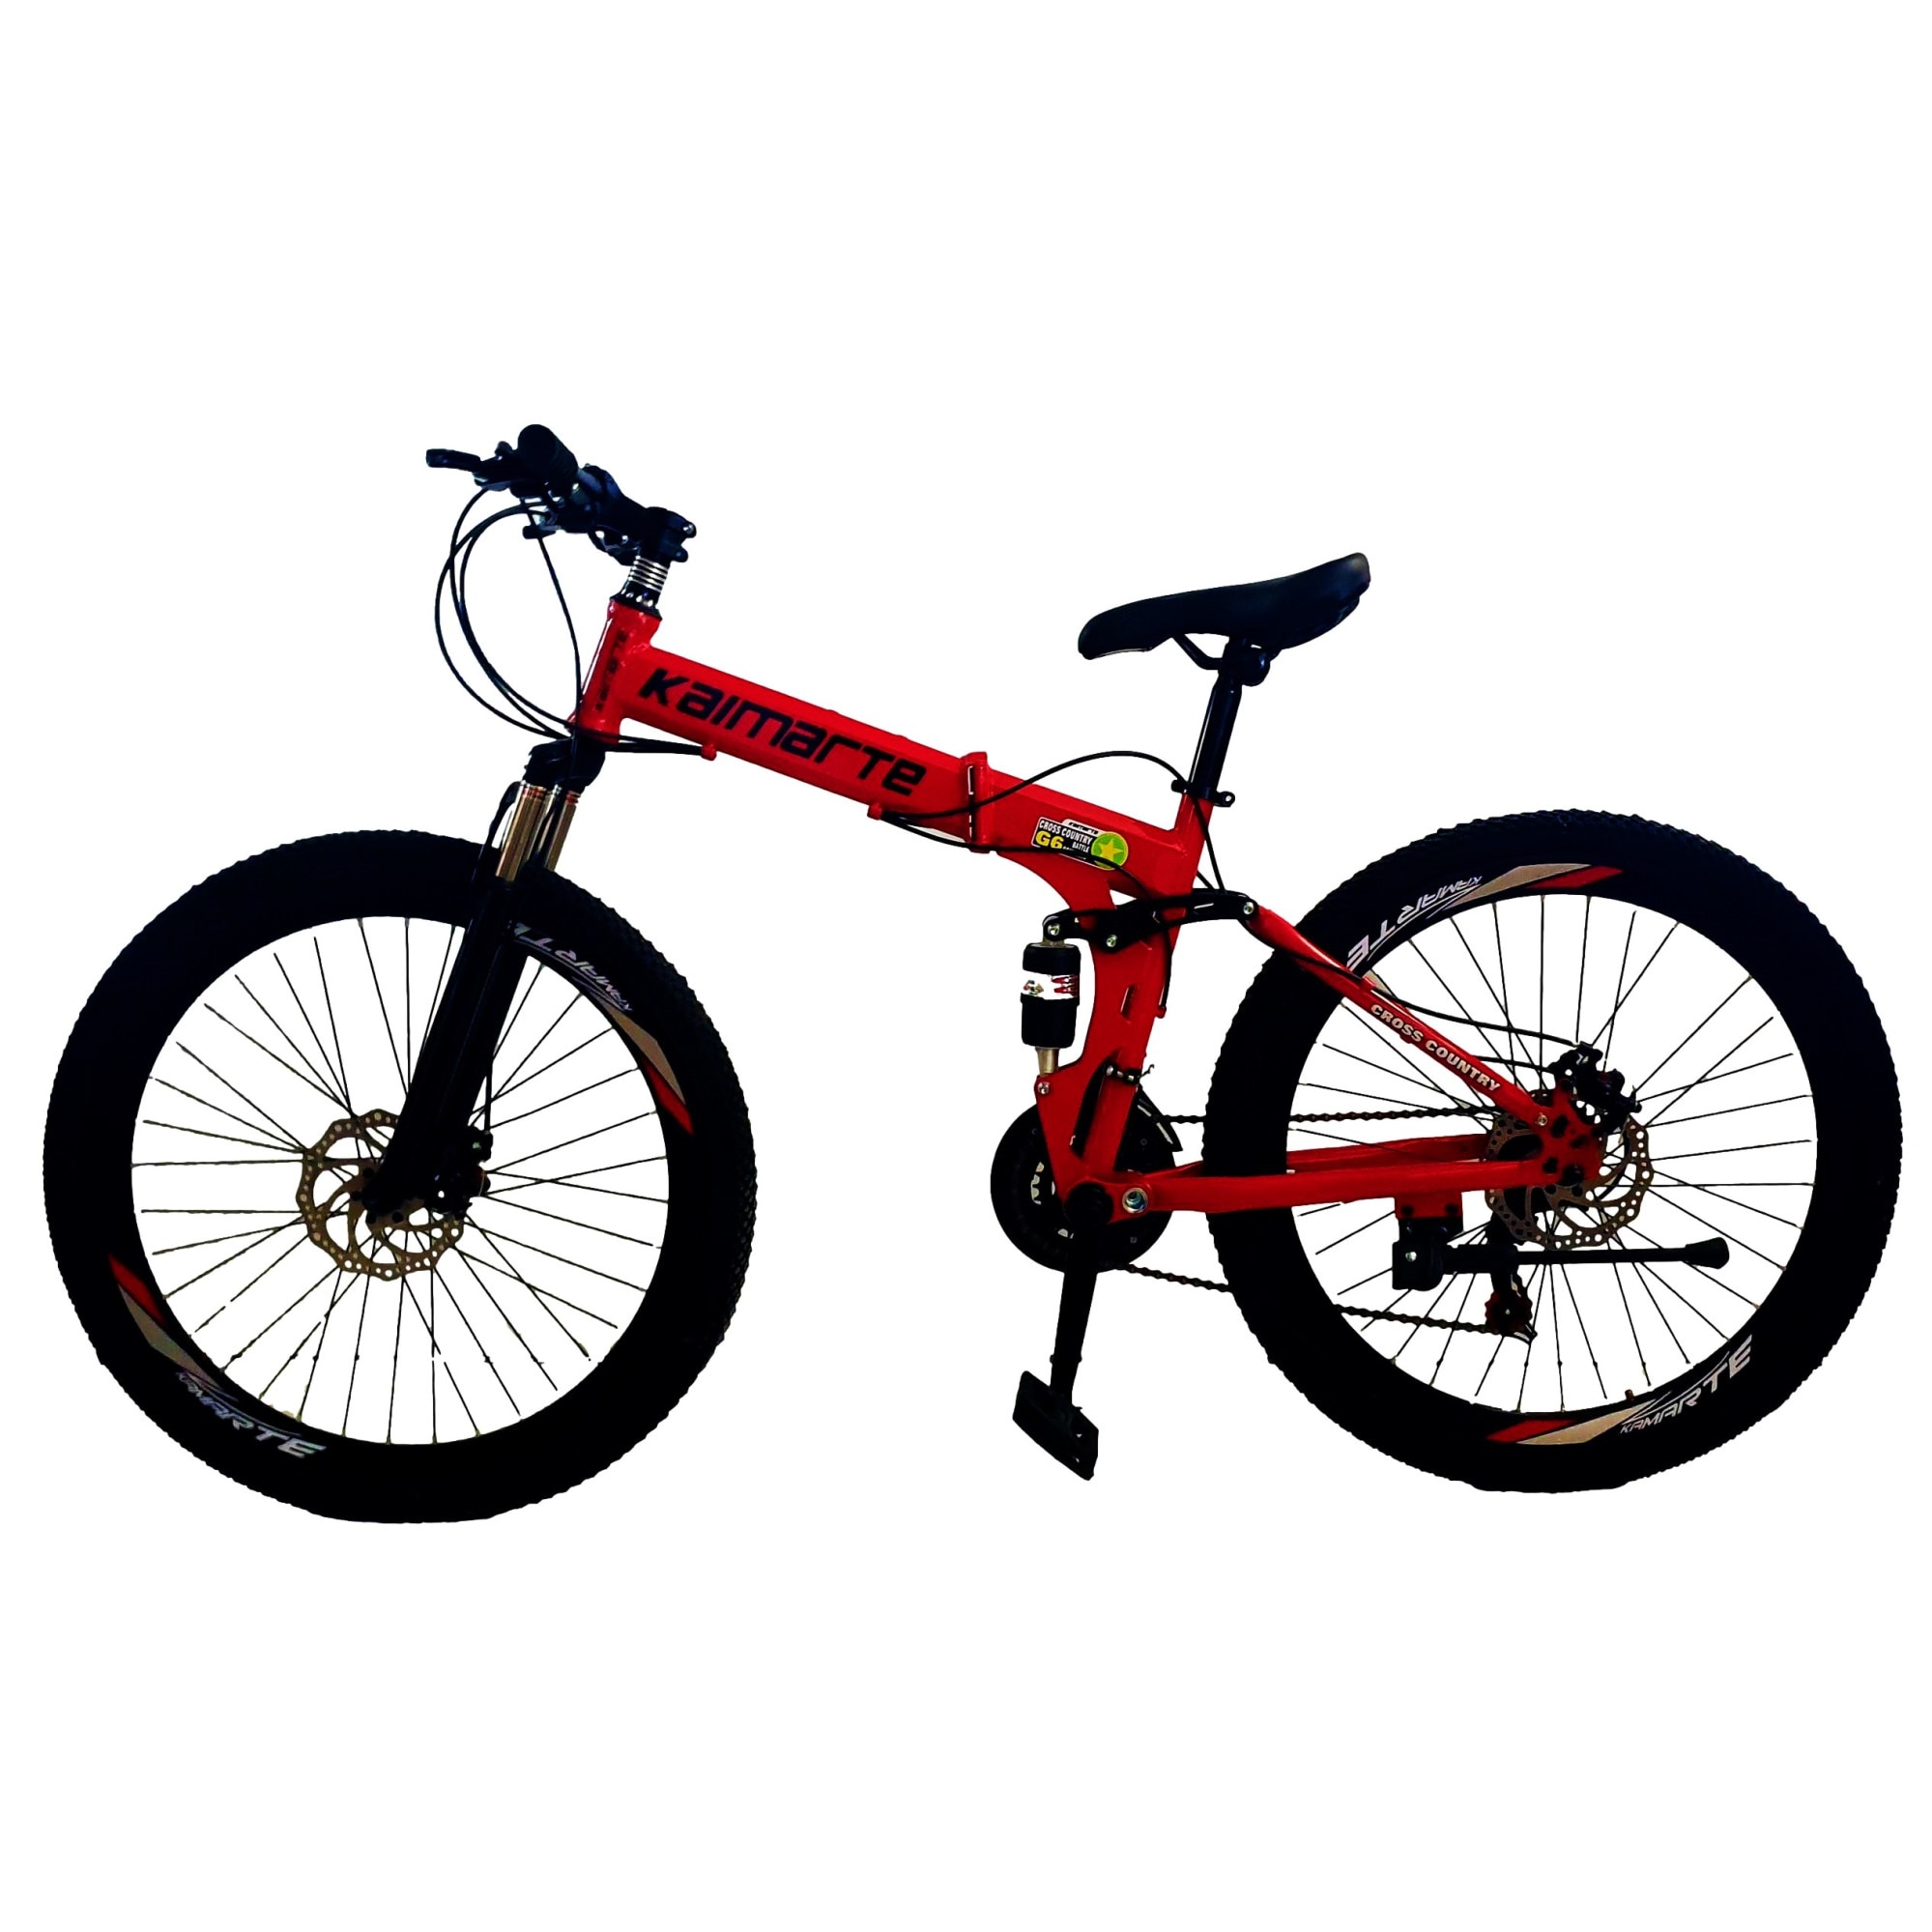 Snake cold Intimate Bicicleta Mountain Bike - KAIMARTE, AP2, 26 inch, genti aluminiu duble,  cadru otel, frane mecanice pe disc fata/spate, full suspensie, pliabila, 21  de viteze, culoare rosu - eMAG.ro